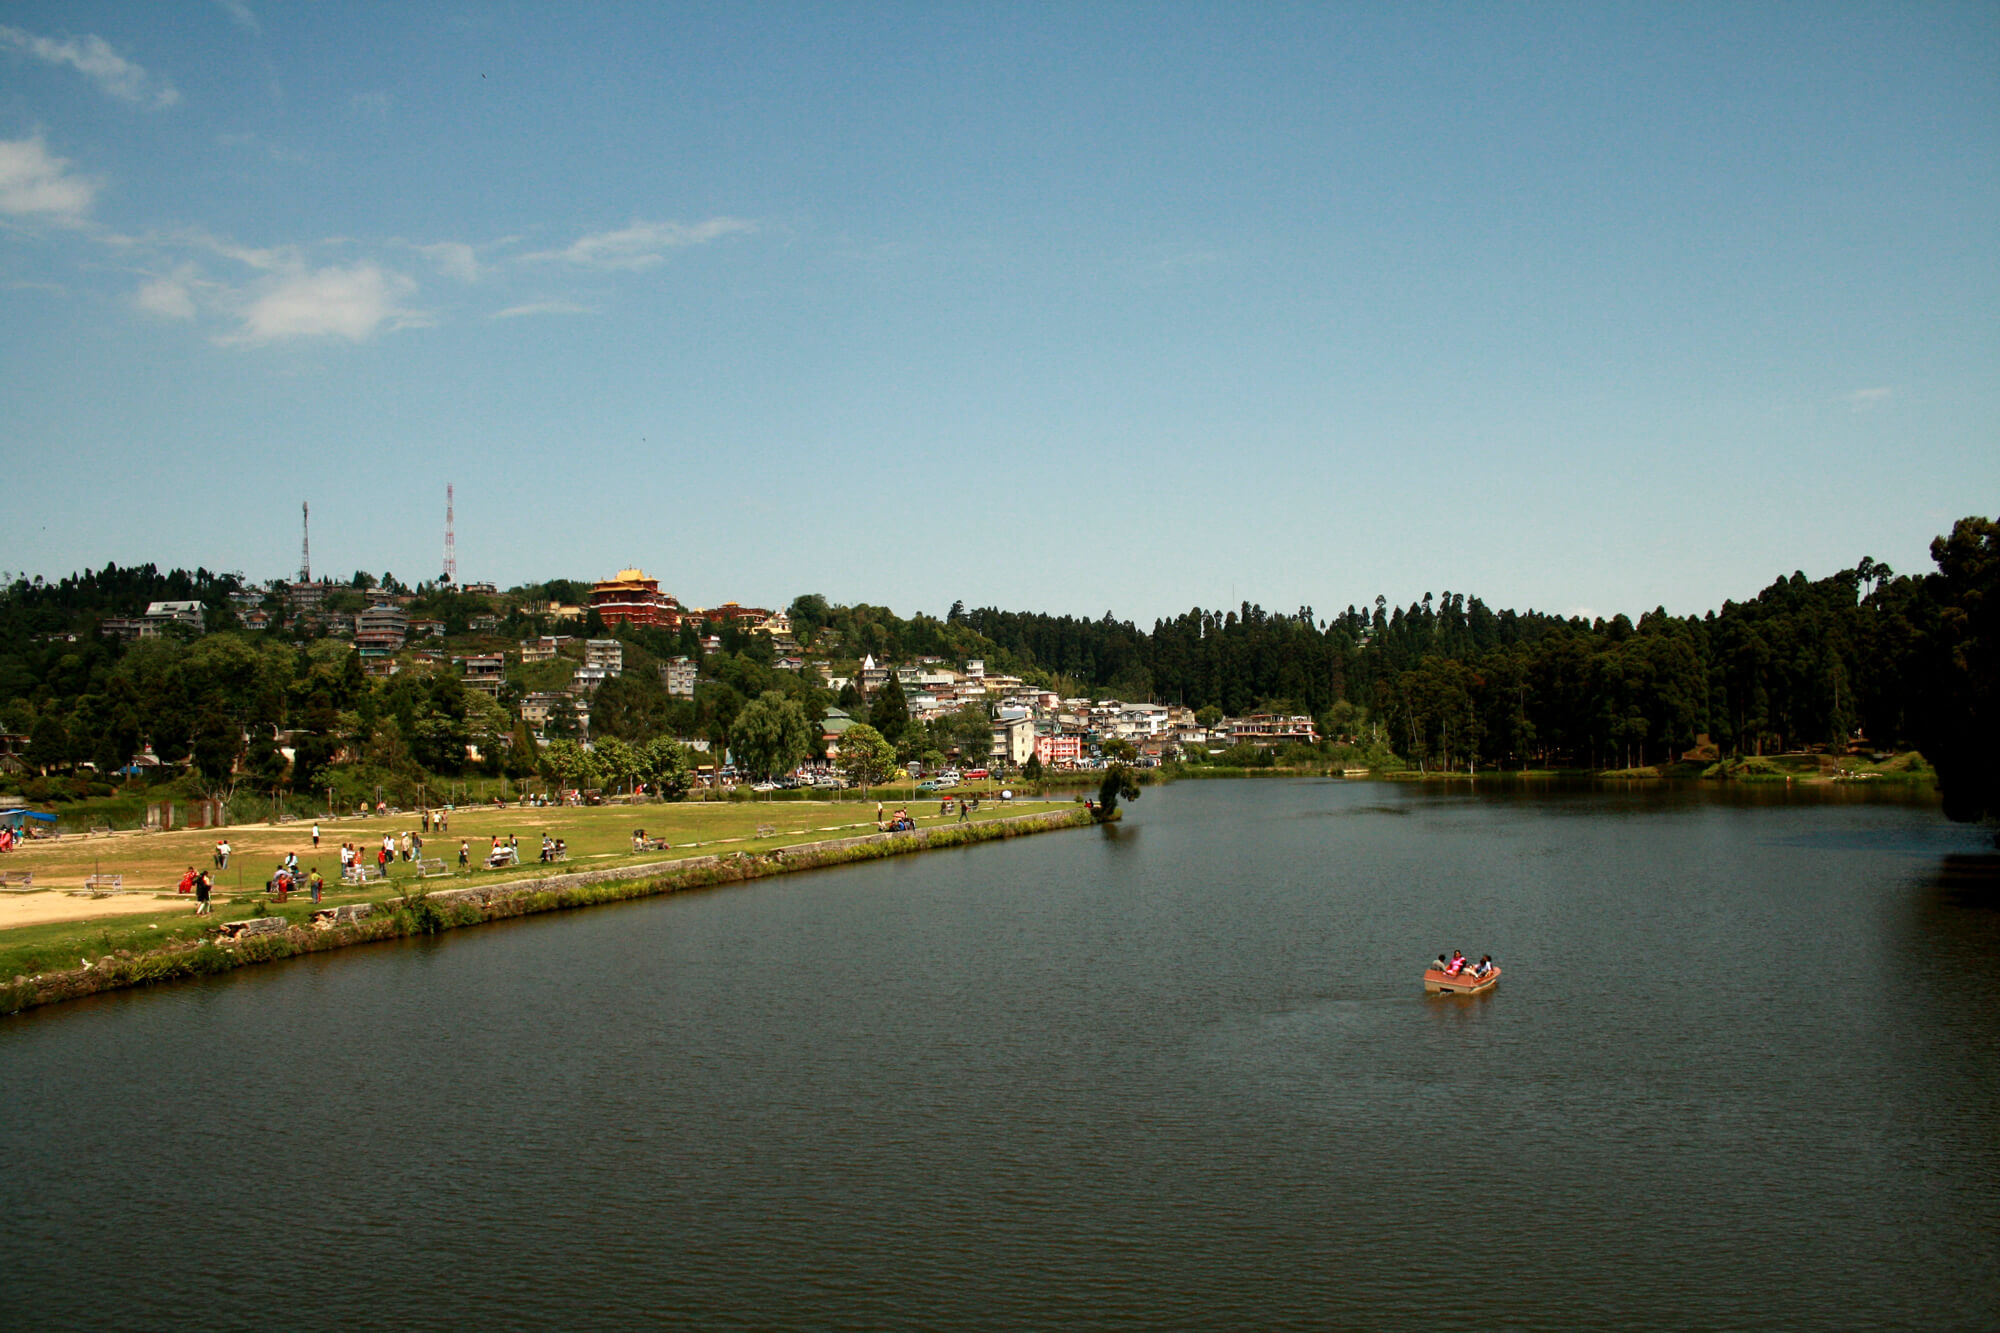 Darjeeling Mirik Lake Tour Package